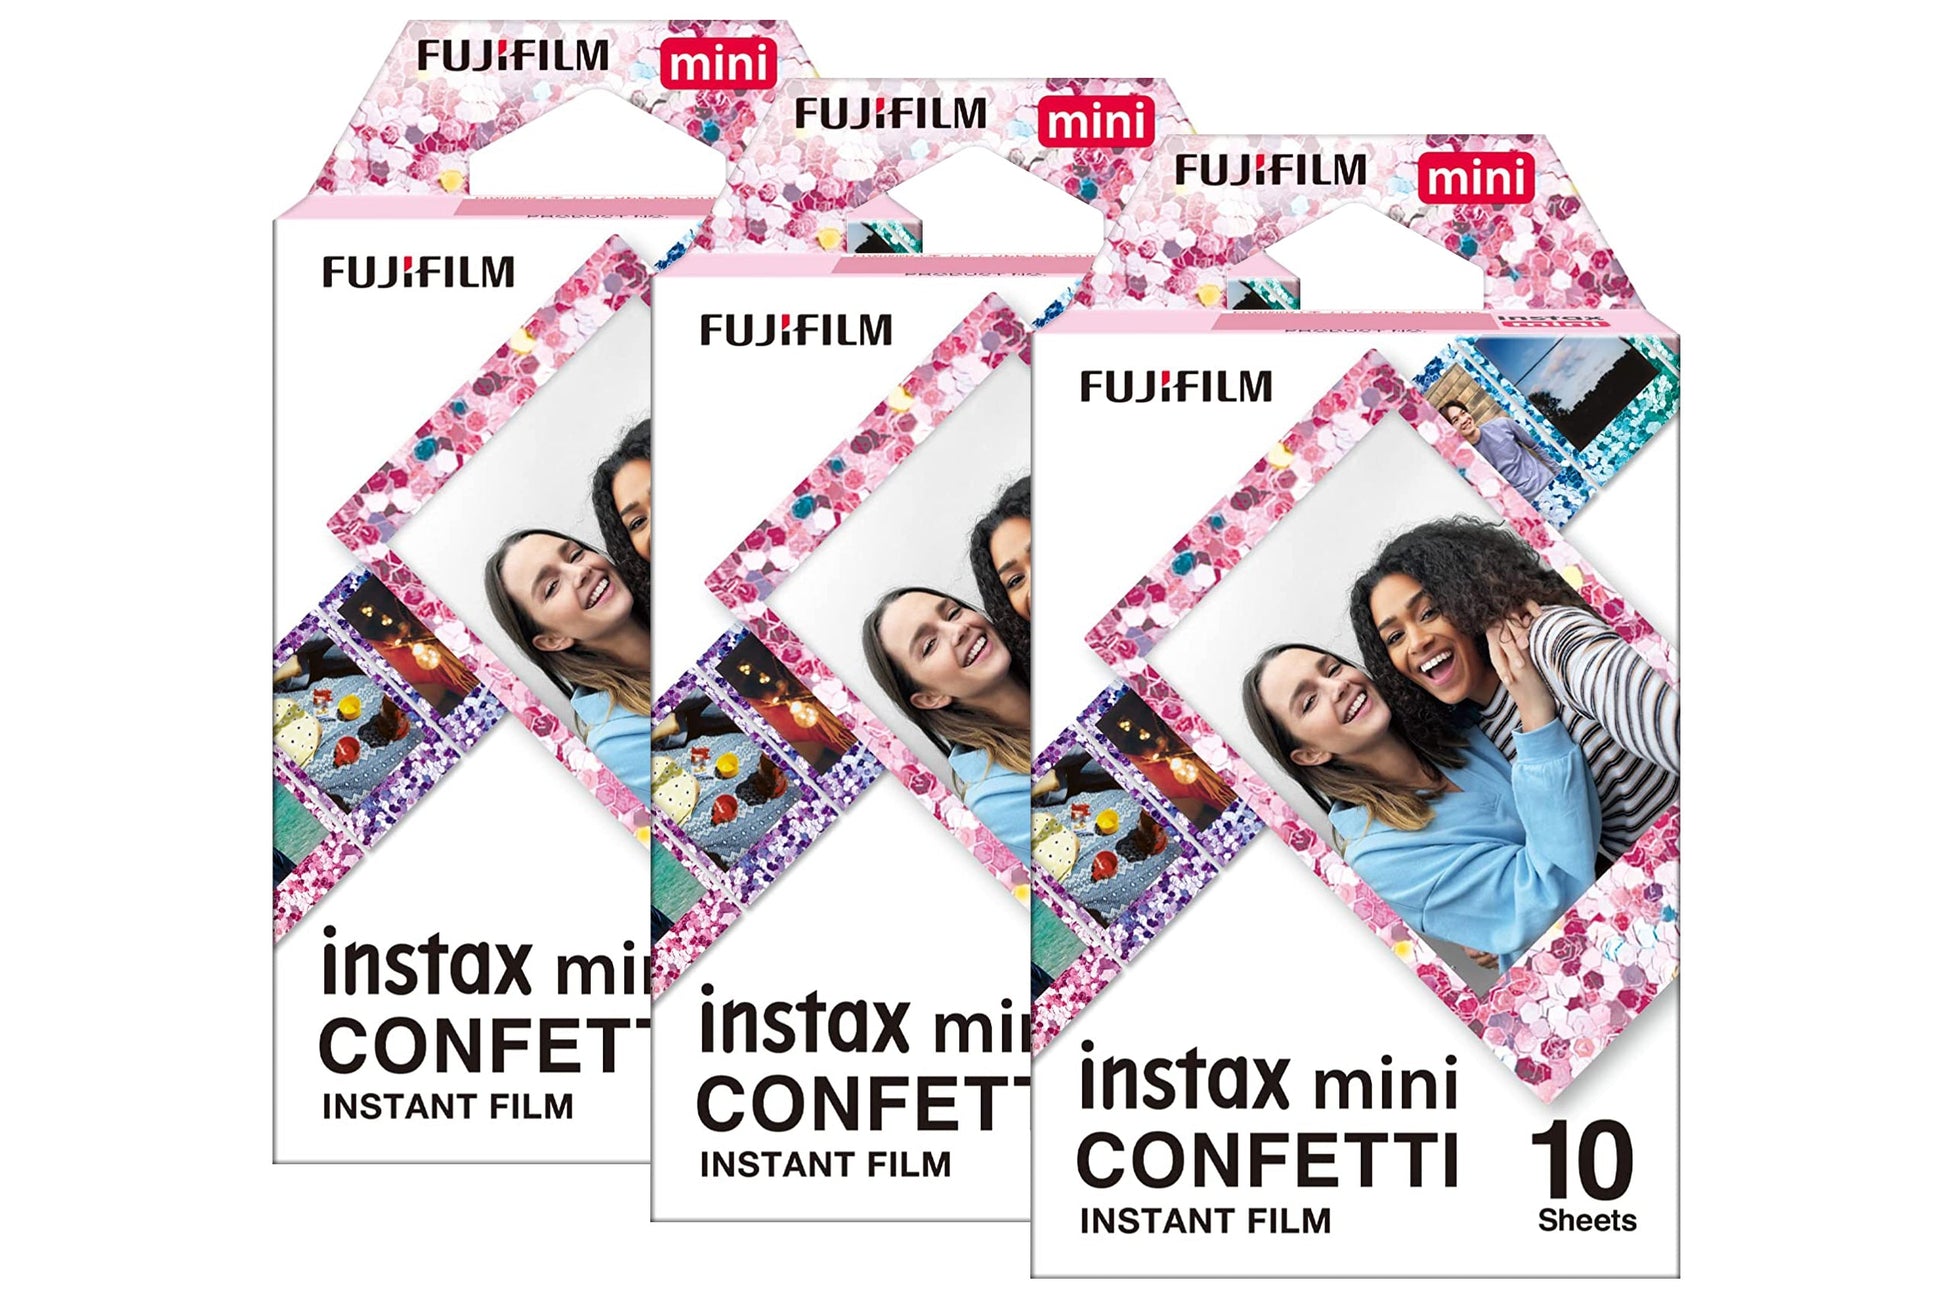 Fujifilm Instax Mini Film Confetti for Instax Mini Cameras (10